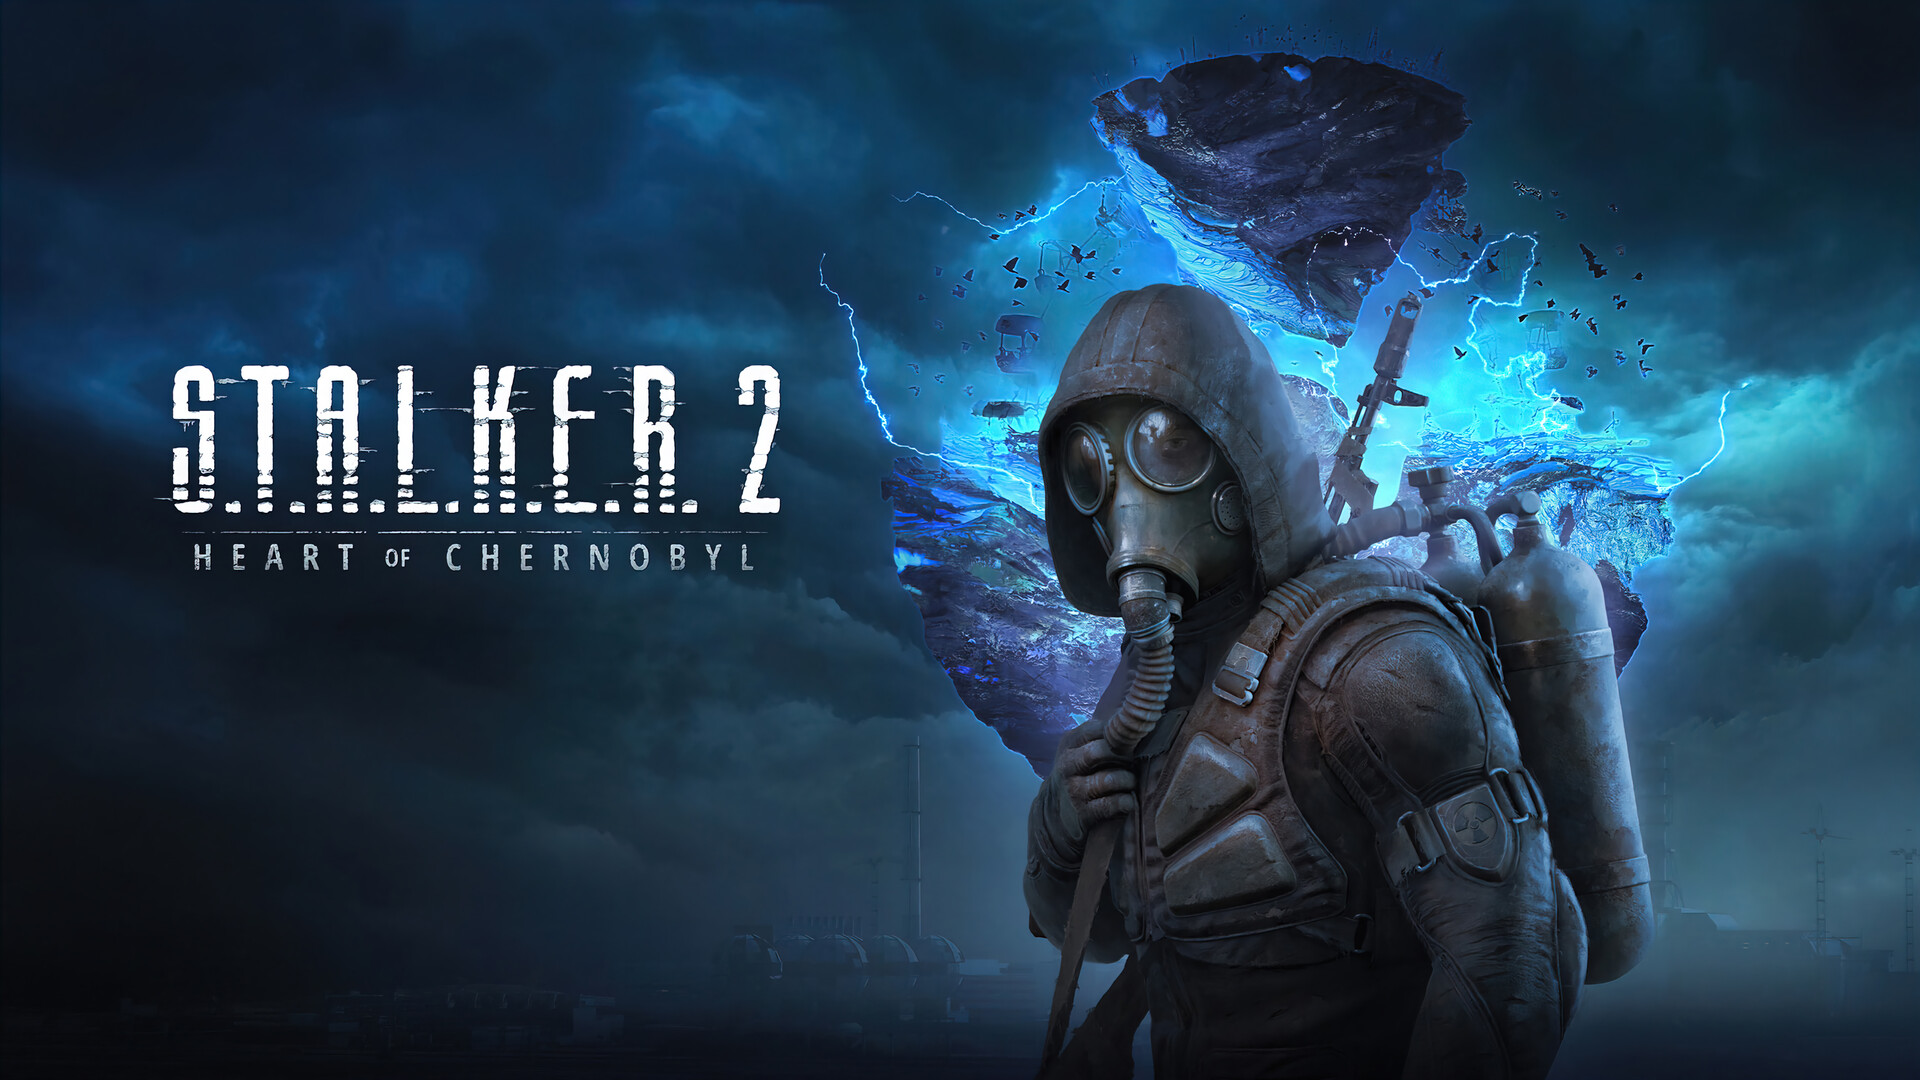 Stalker 2 também está previsto para ser lançado no primeiro